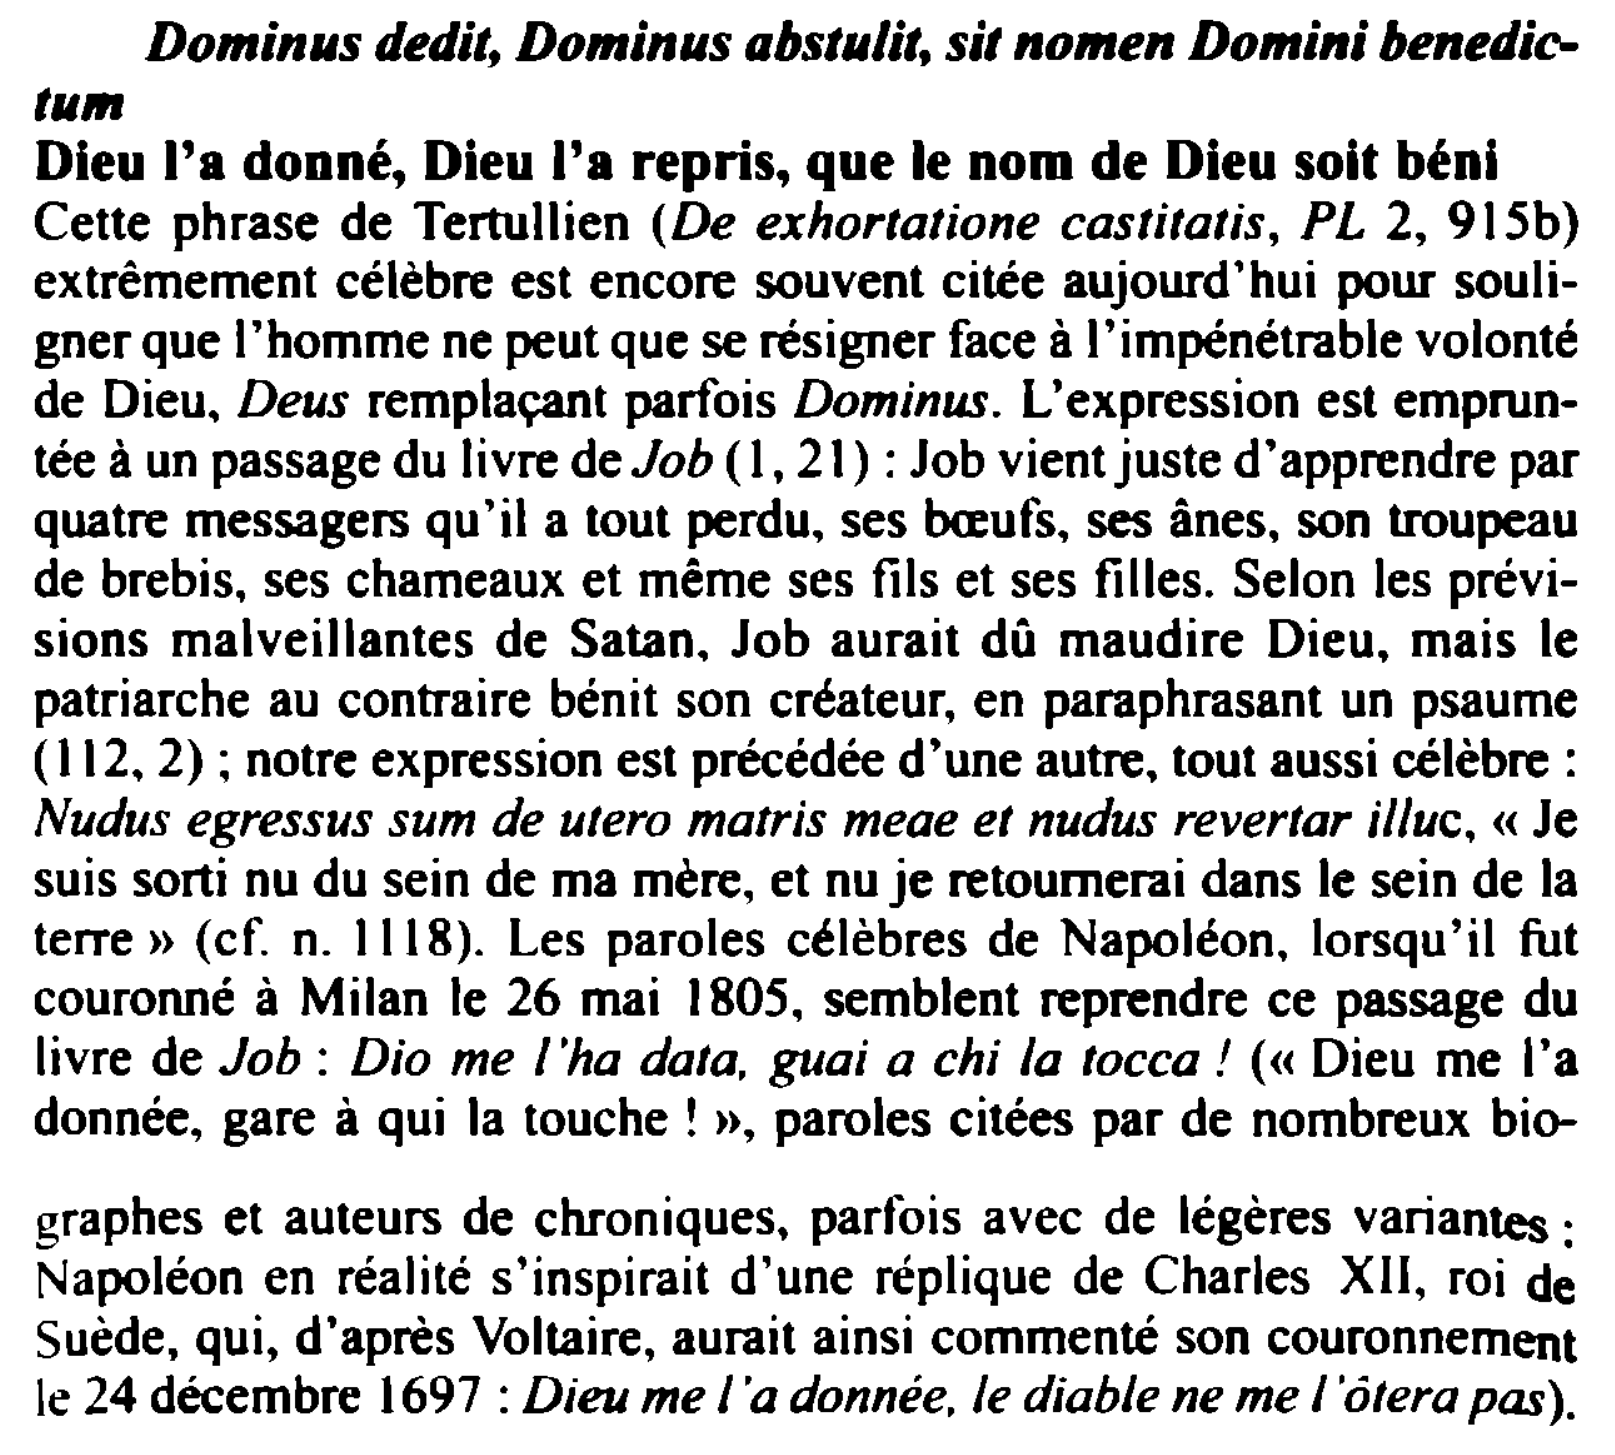 Prévisualisation du document Dominus deditt Dominus abstulit, sit nomen Domini benedictu,n

Dieu l'a donné, Dieu l'a repris, que le nom de Dieu soit...